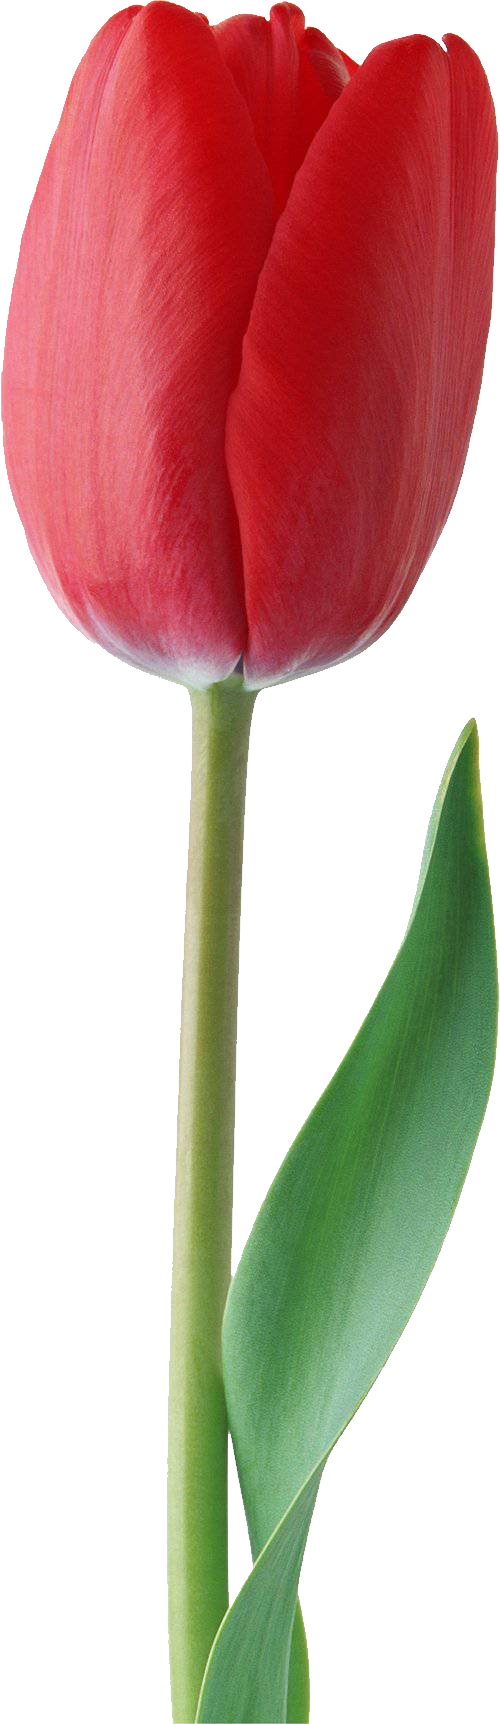 Tulip PNG - 8028